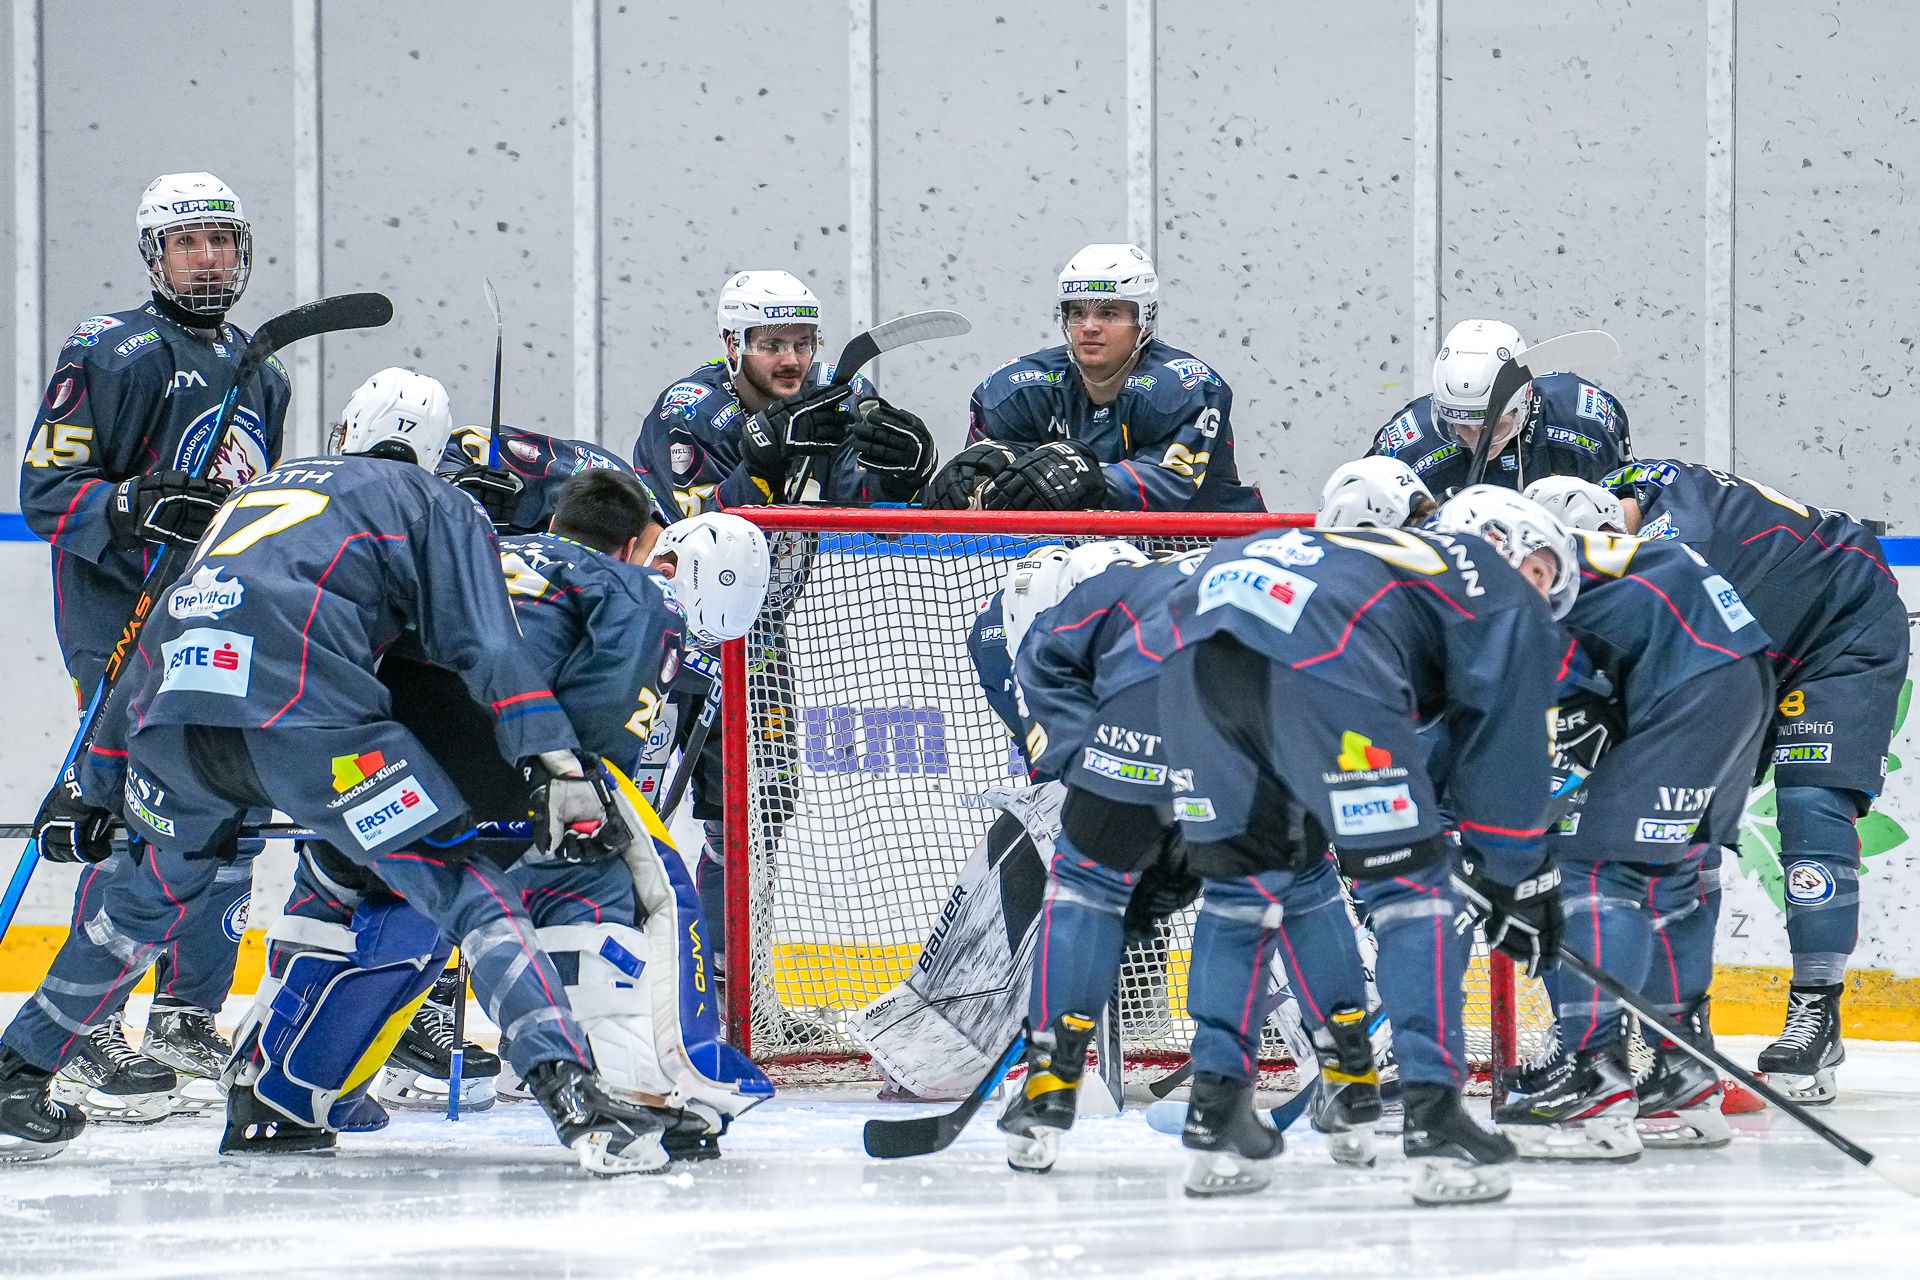 Elsőként a BJA jutott a jégkorong Magyar Kupa döntőjébe